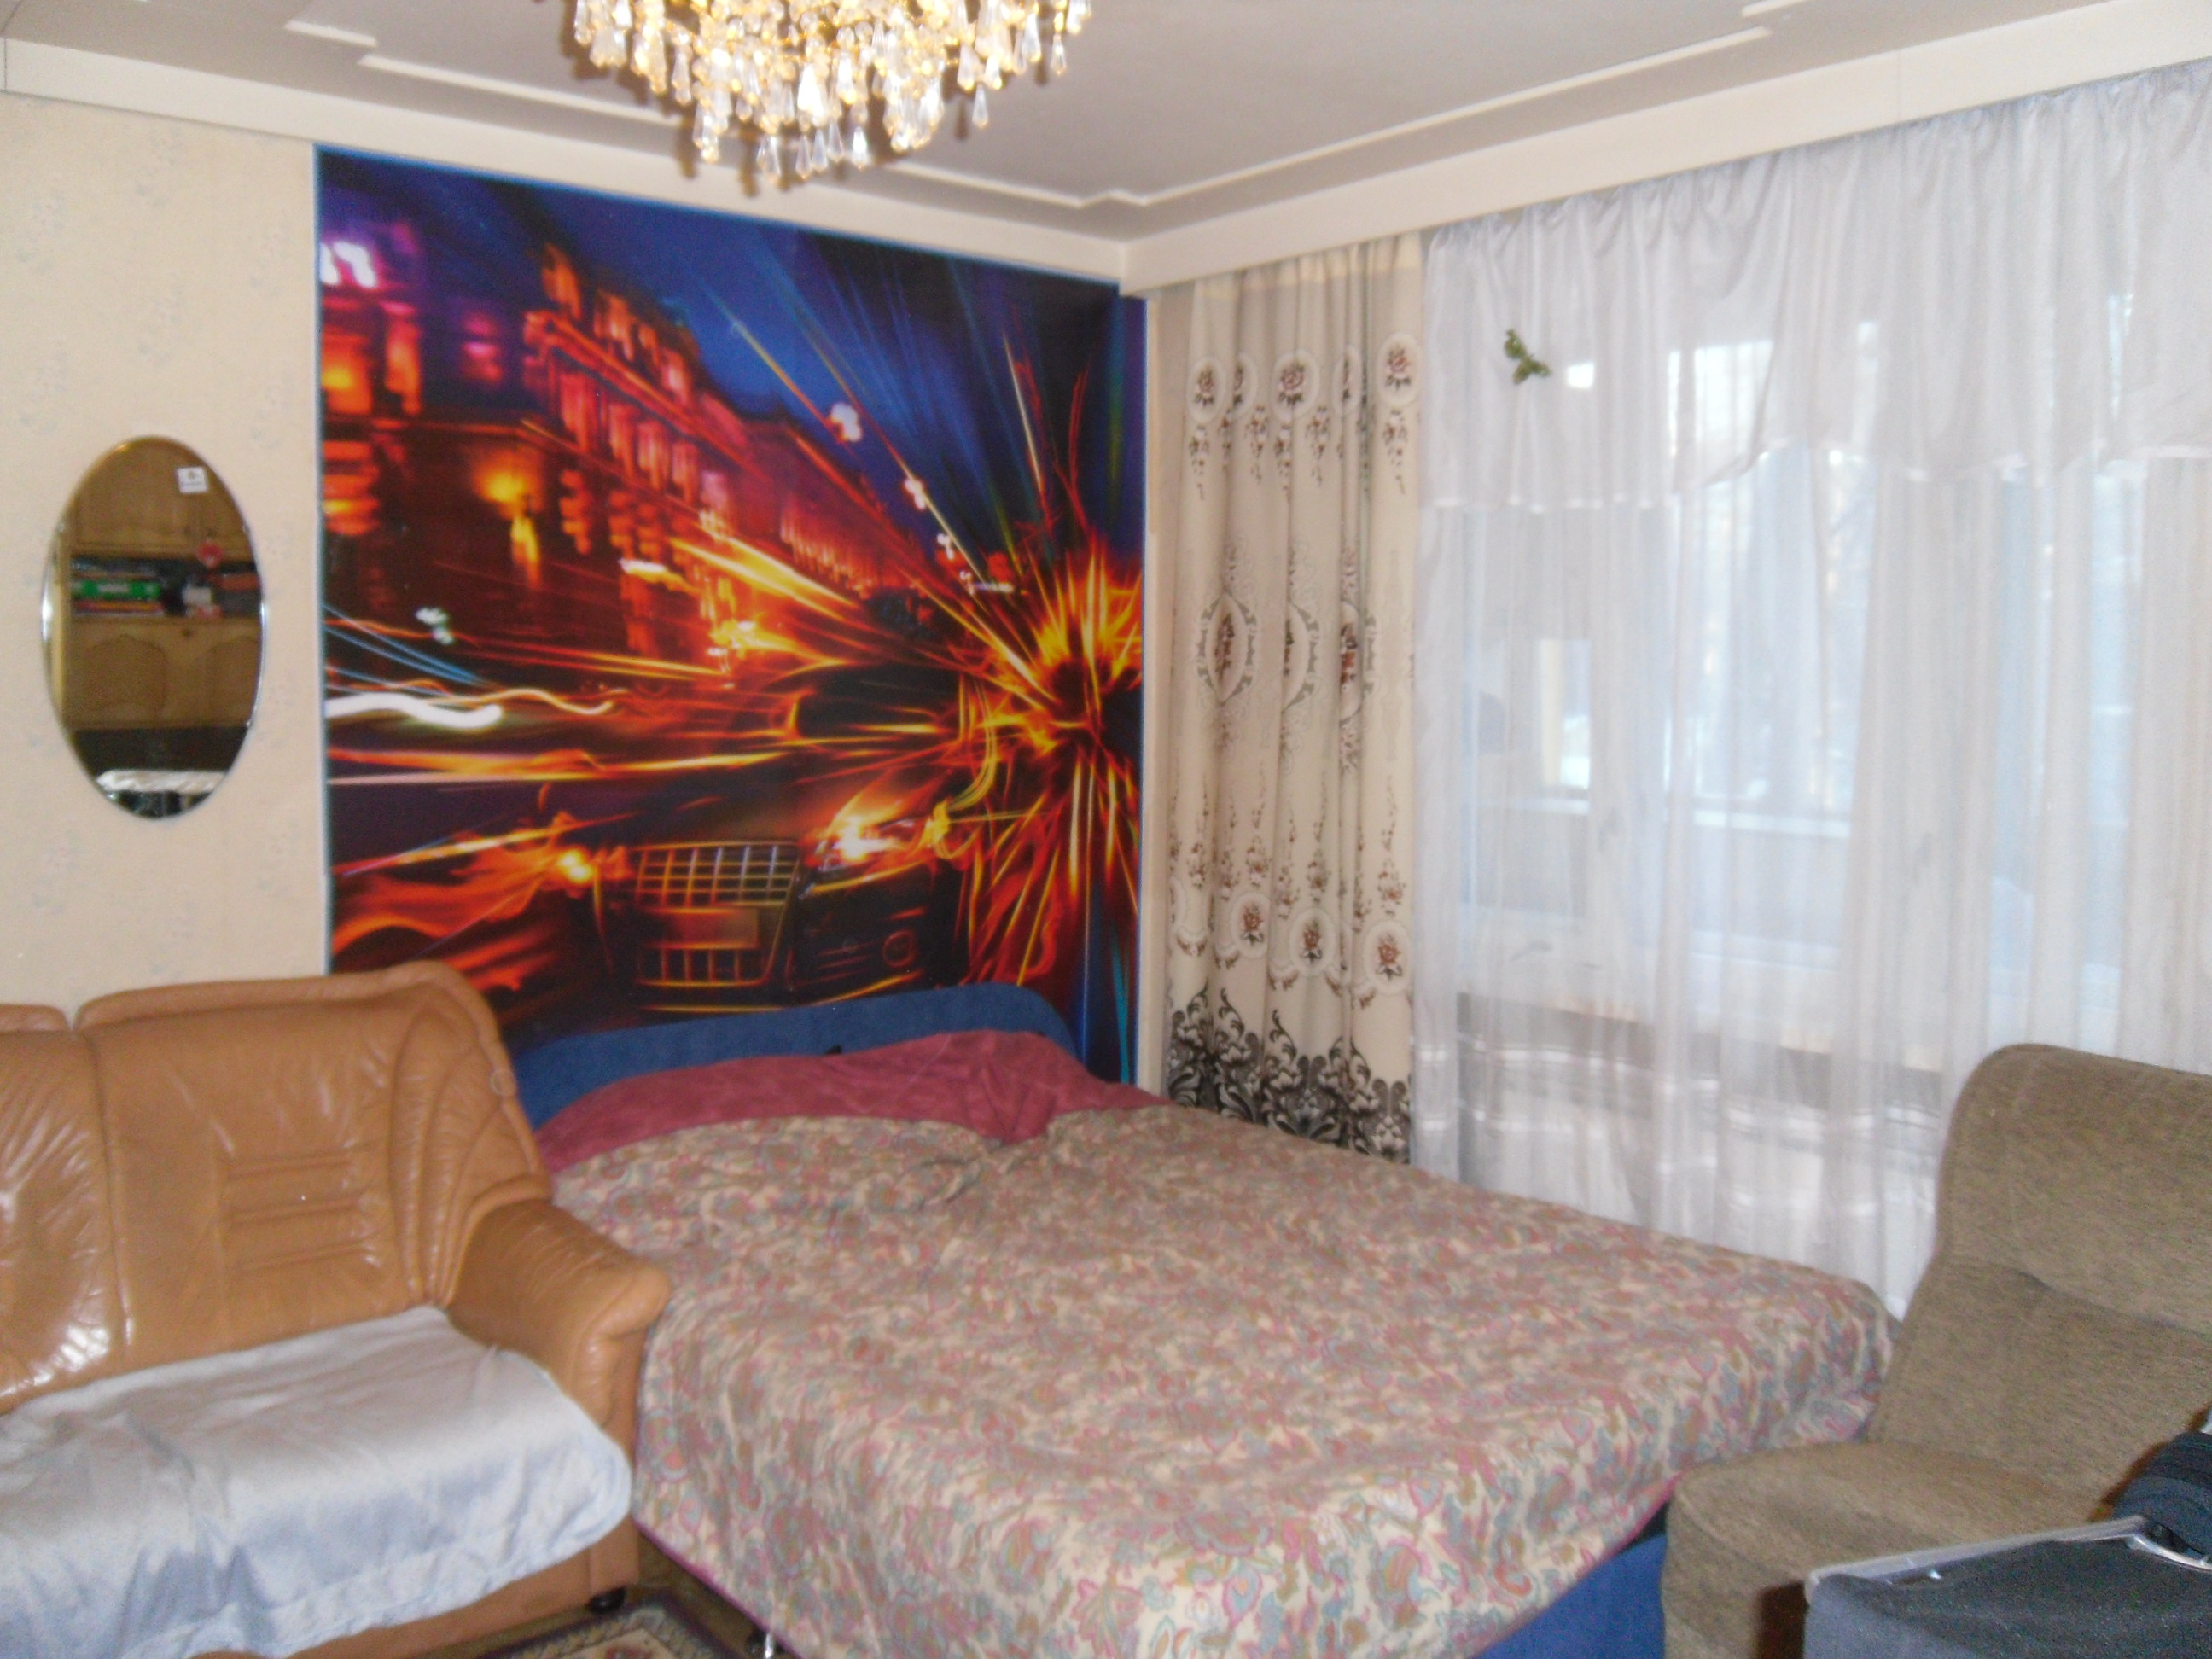 Сниму комнату в краснодаре без посредников от хозяина недорого с фото